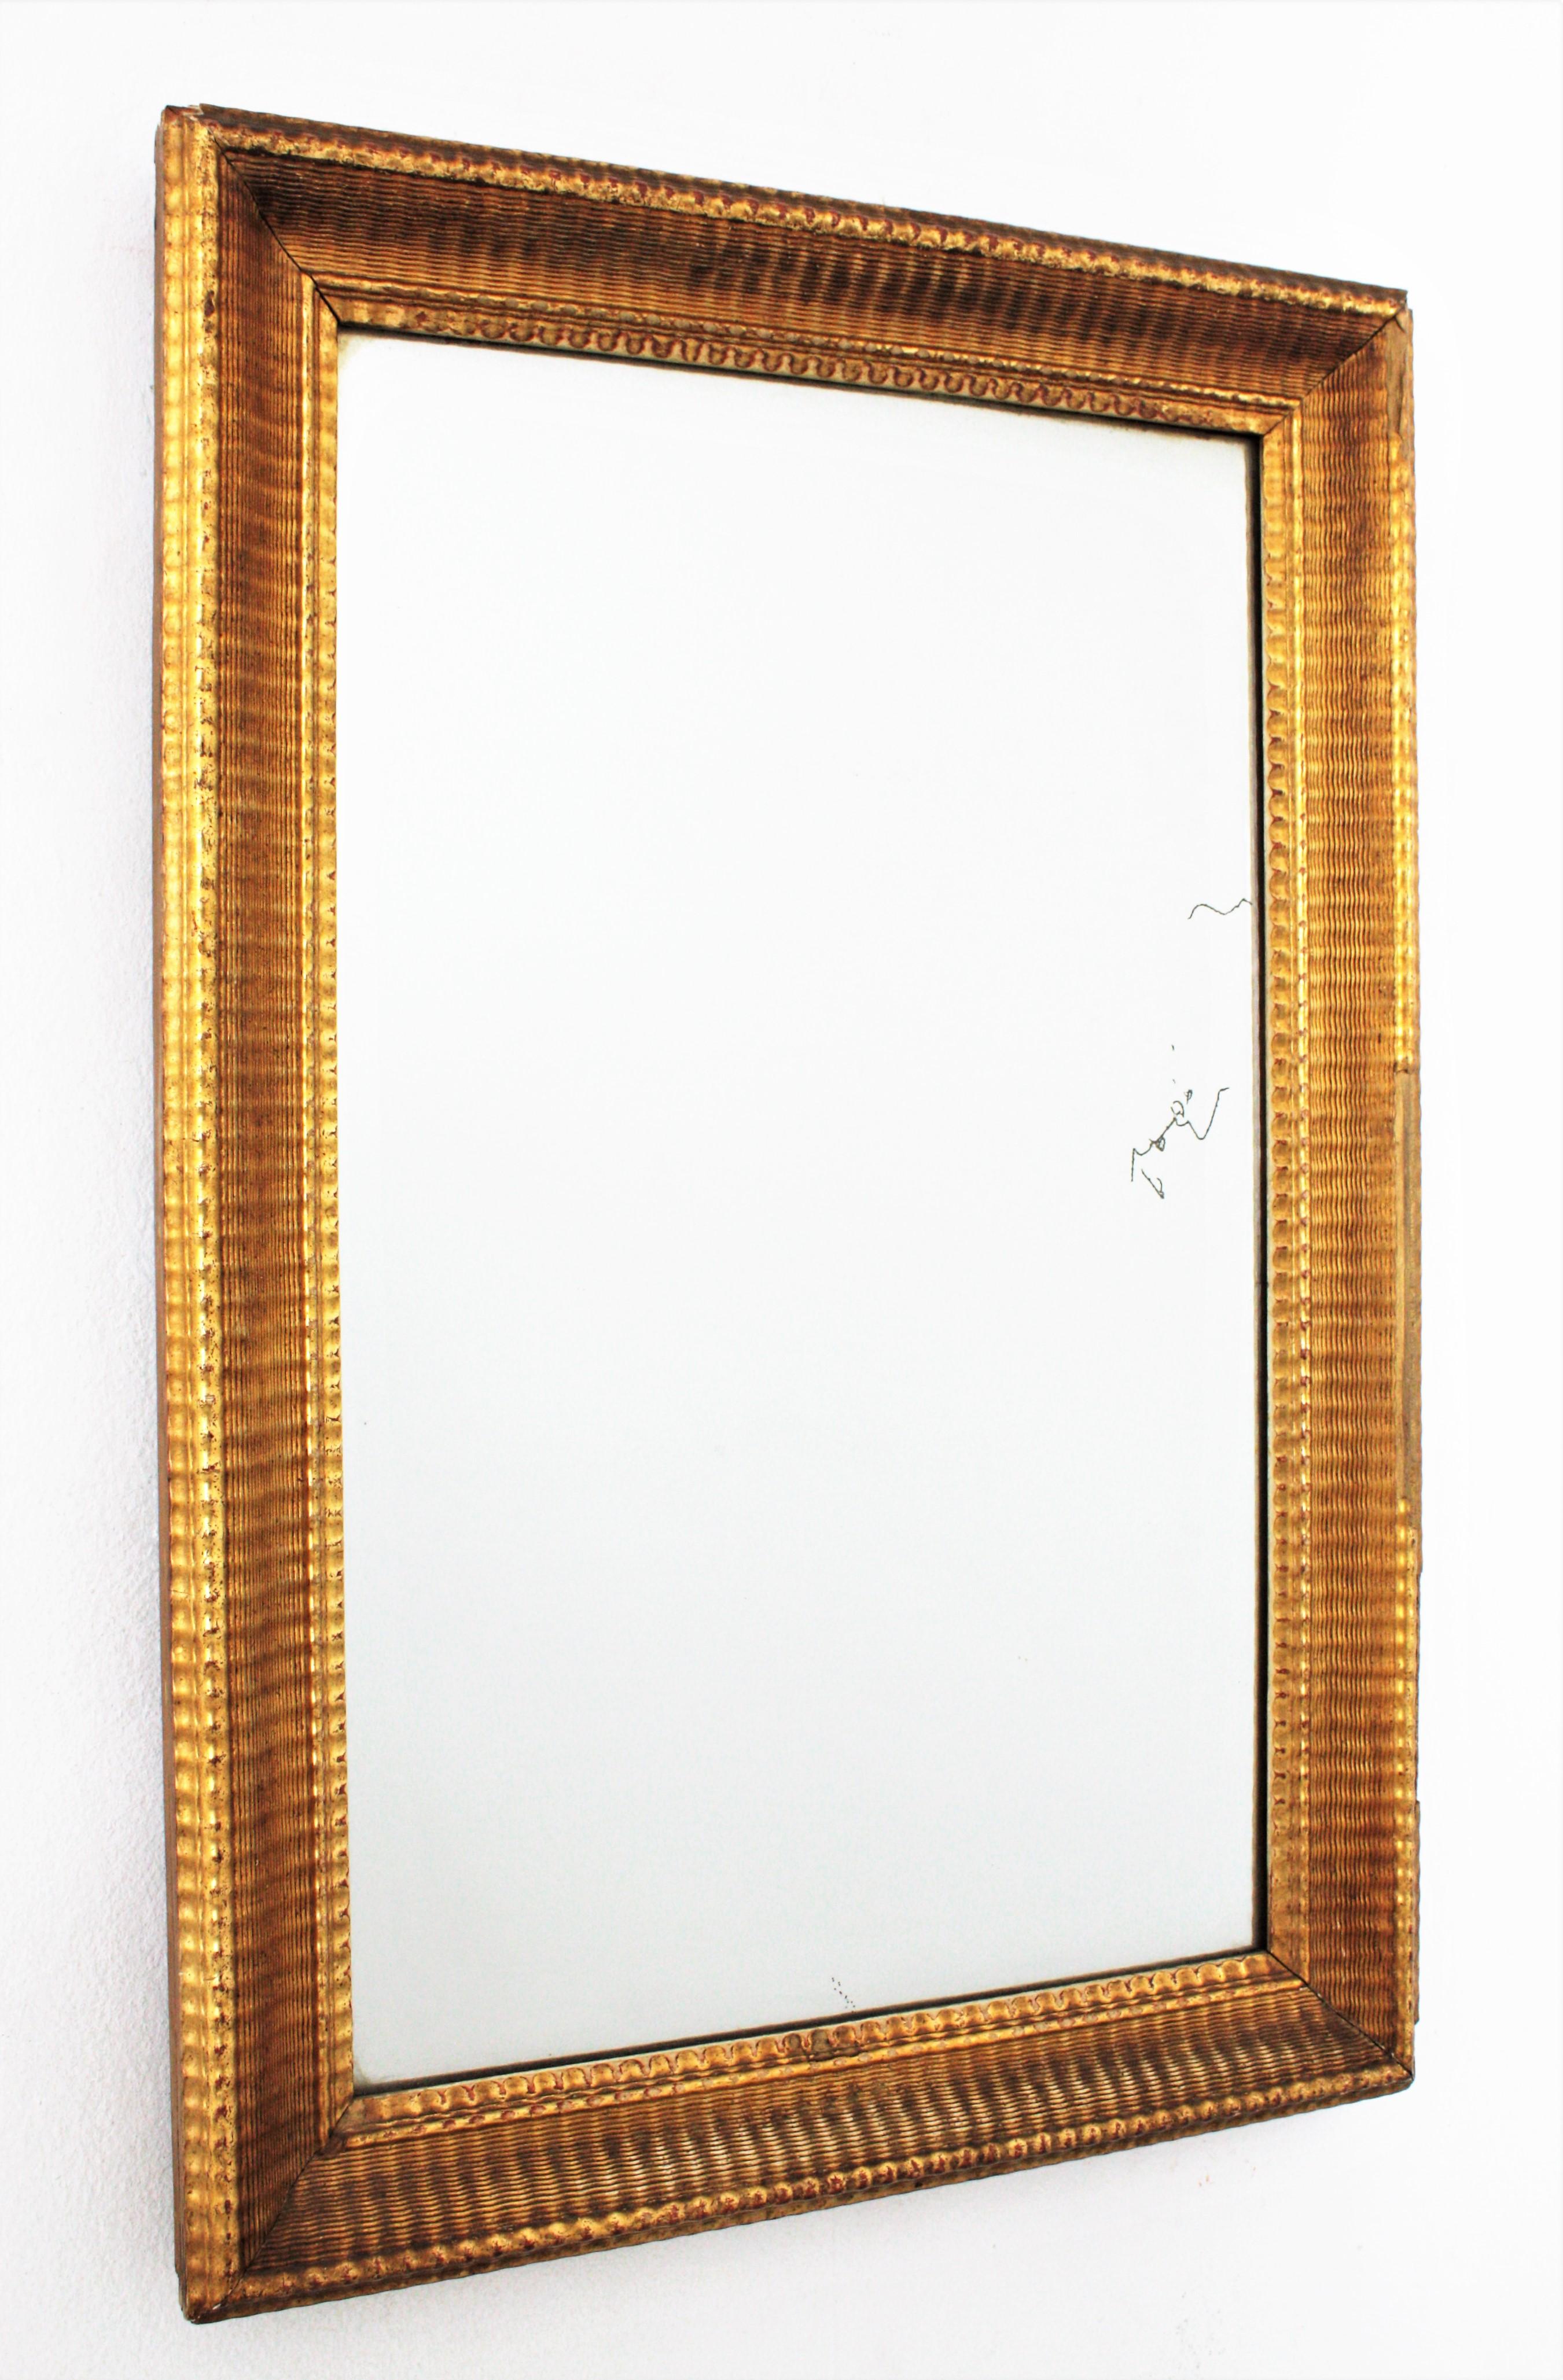 Wunderschöner Spiegel aus der Louis-Philippe-Periode mit fein geripptem Schnitzrahmen und Blattgoldauflage. Frankreich um 1860.
Dieser elegante, robuste und weiche Spiegel hat eine wunderschöne, gealterte Patina. Es hat einige Verluste auf dem